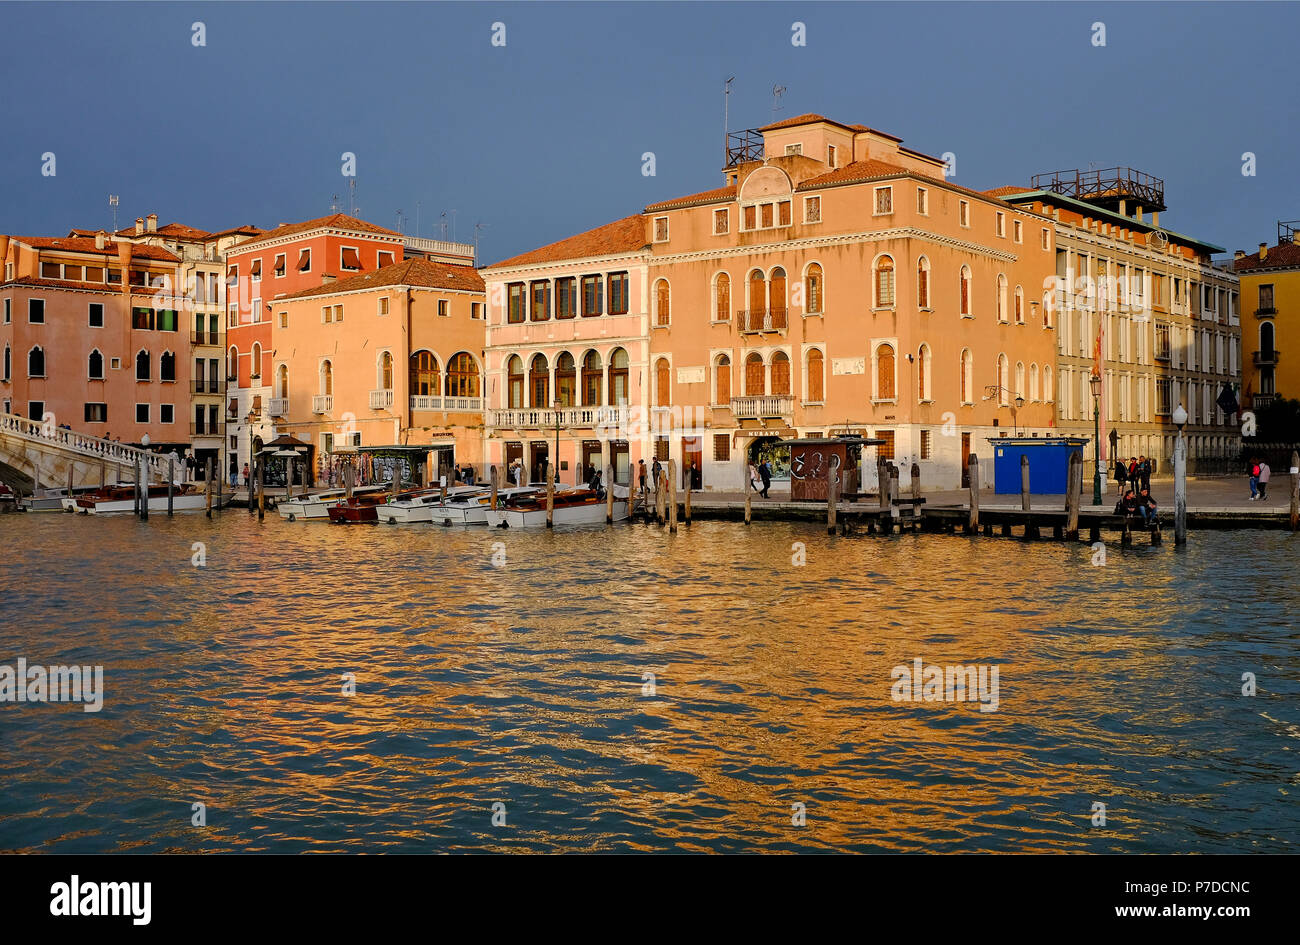 Palazzi sul canal Grande di Venezia, Italia Foto Stock